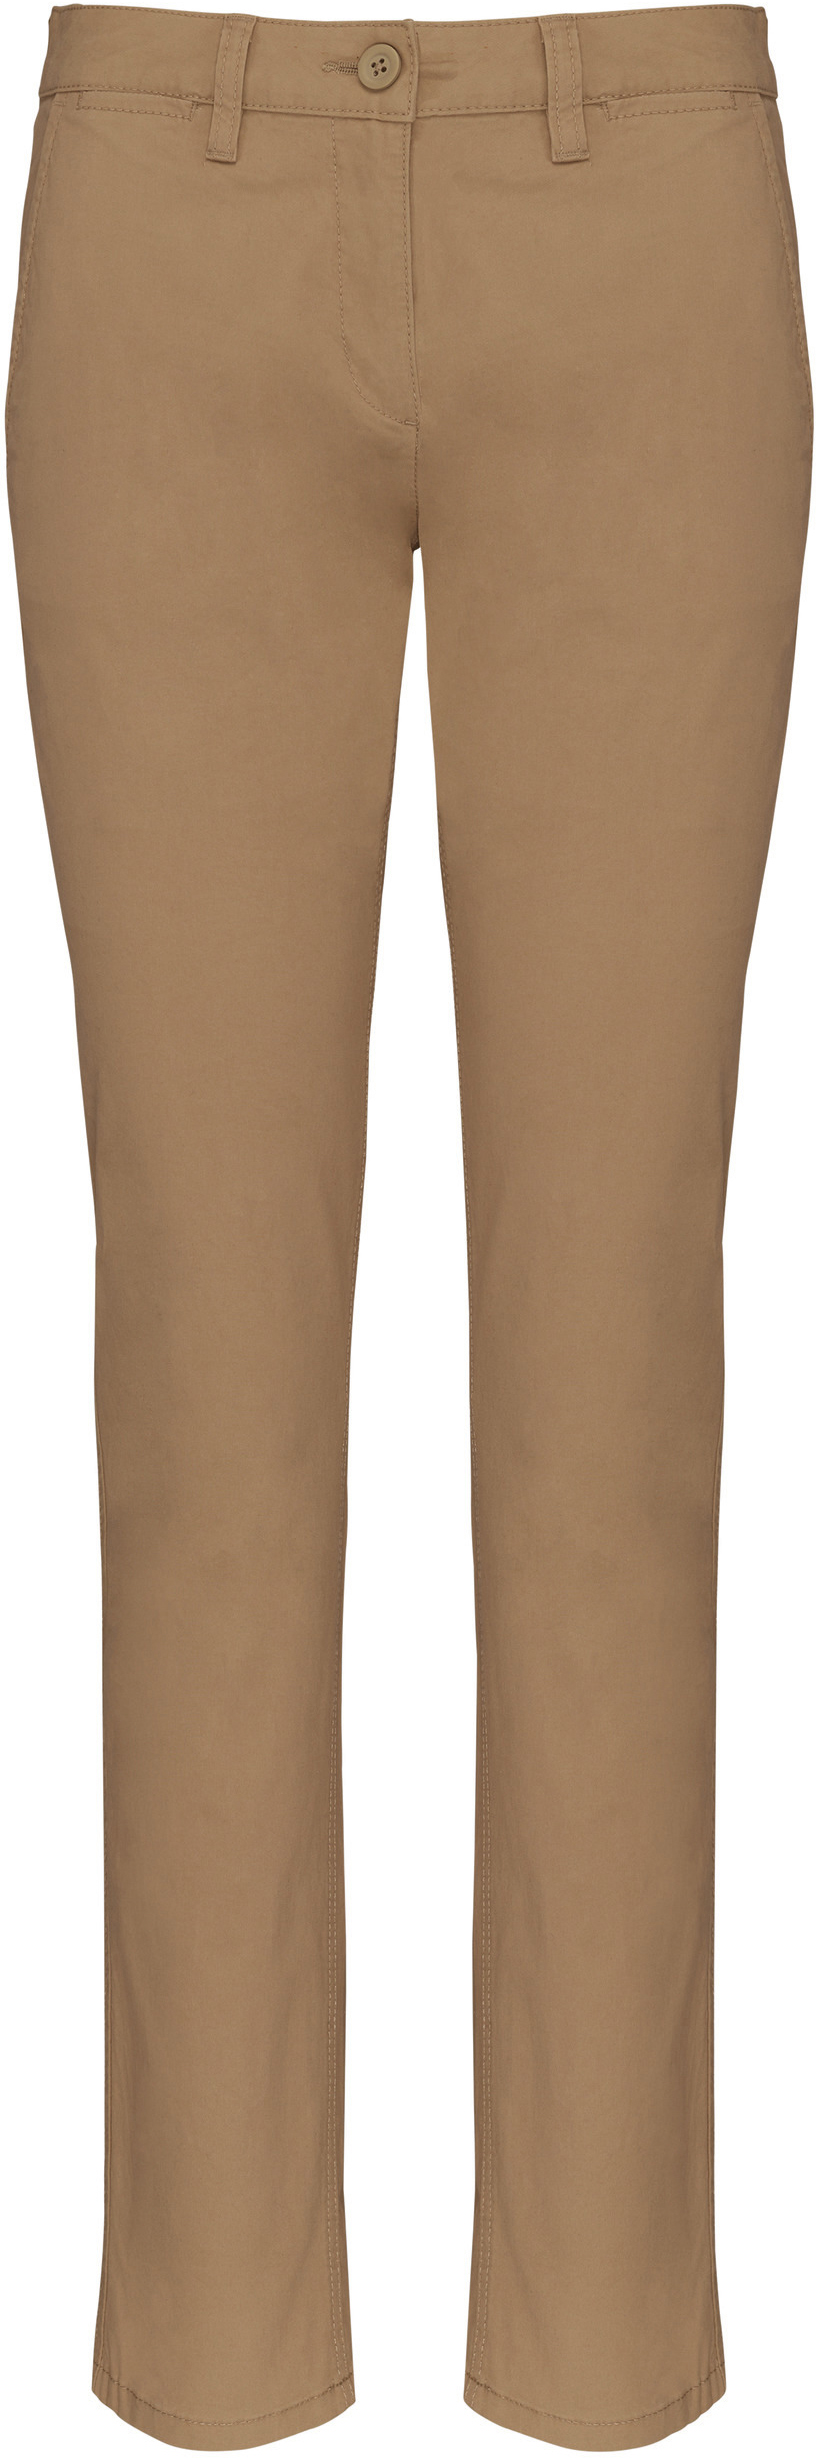 Dámské kalhoty CHINO K741 Barva: camel, Velikost: 42